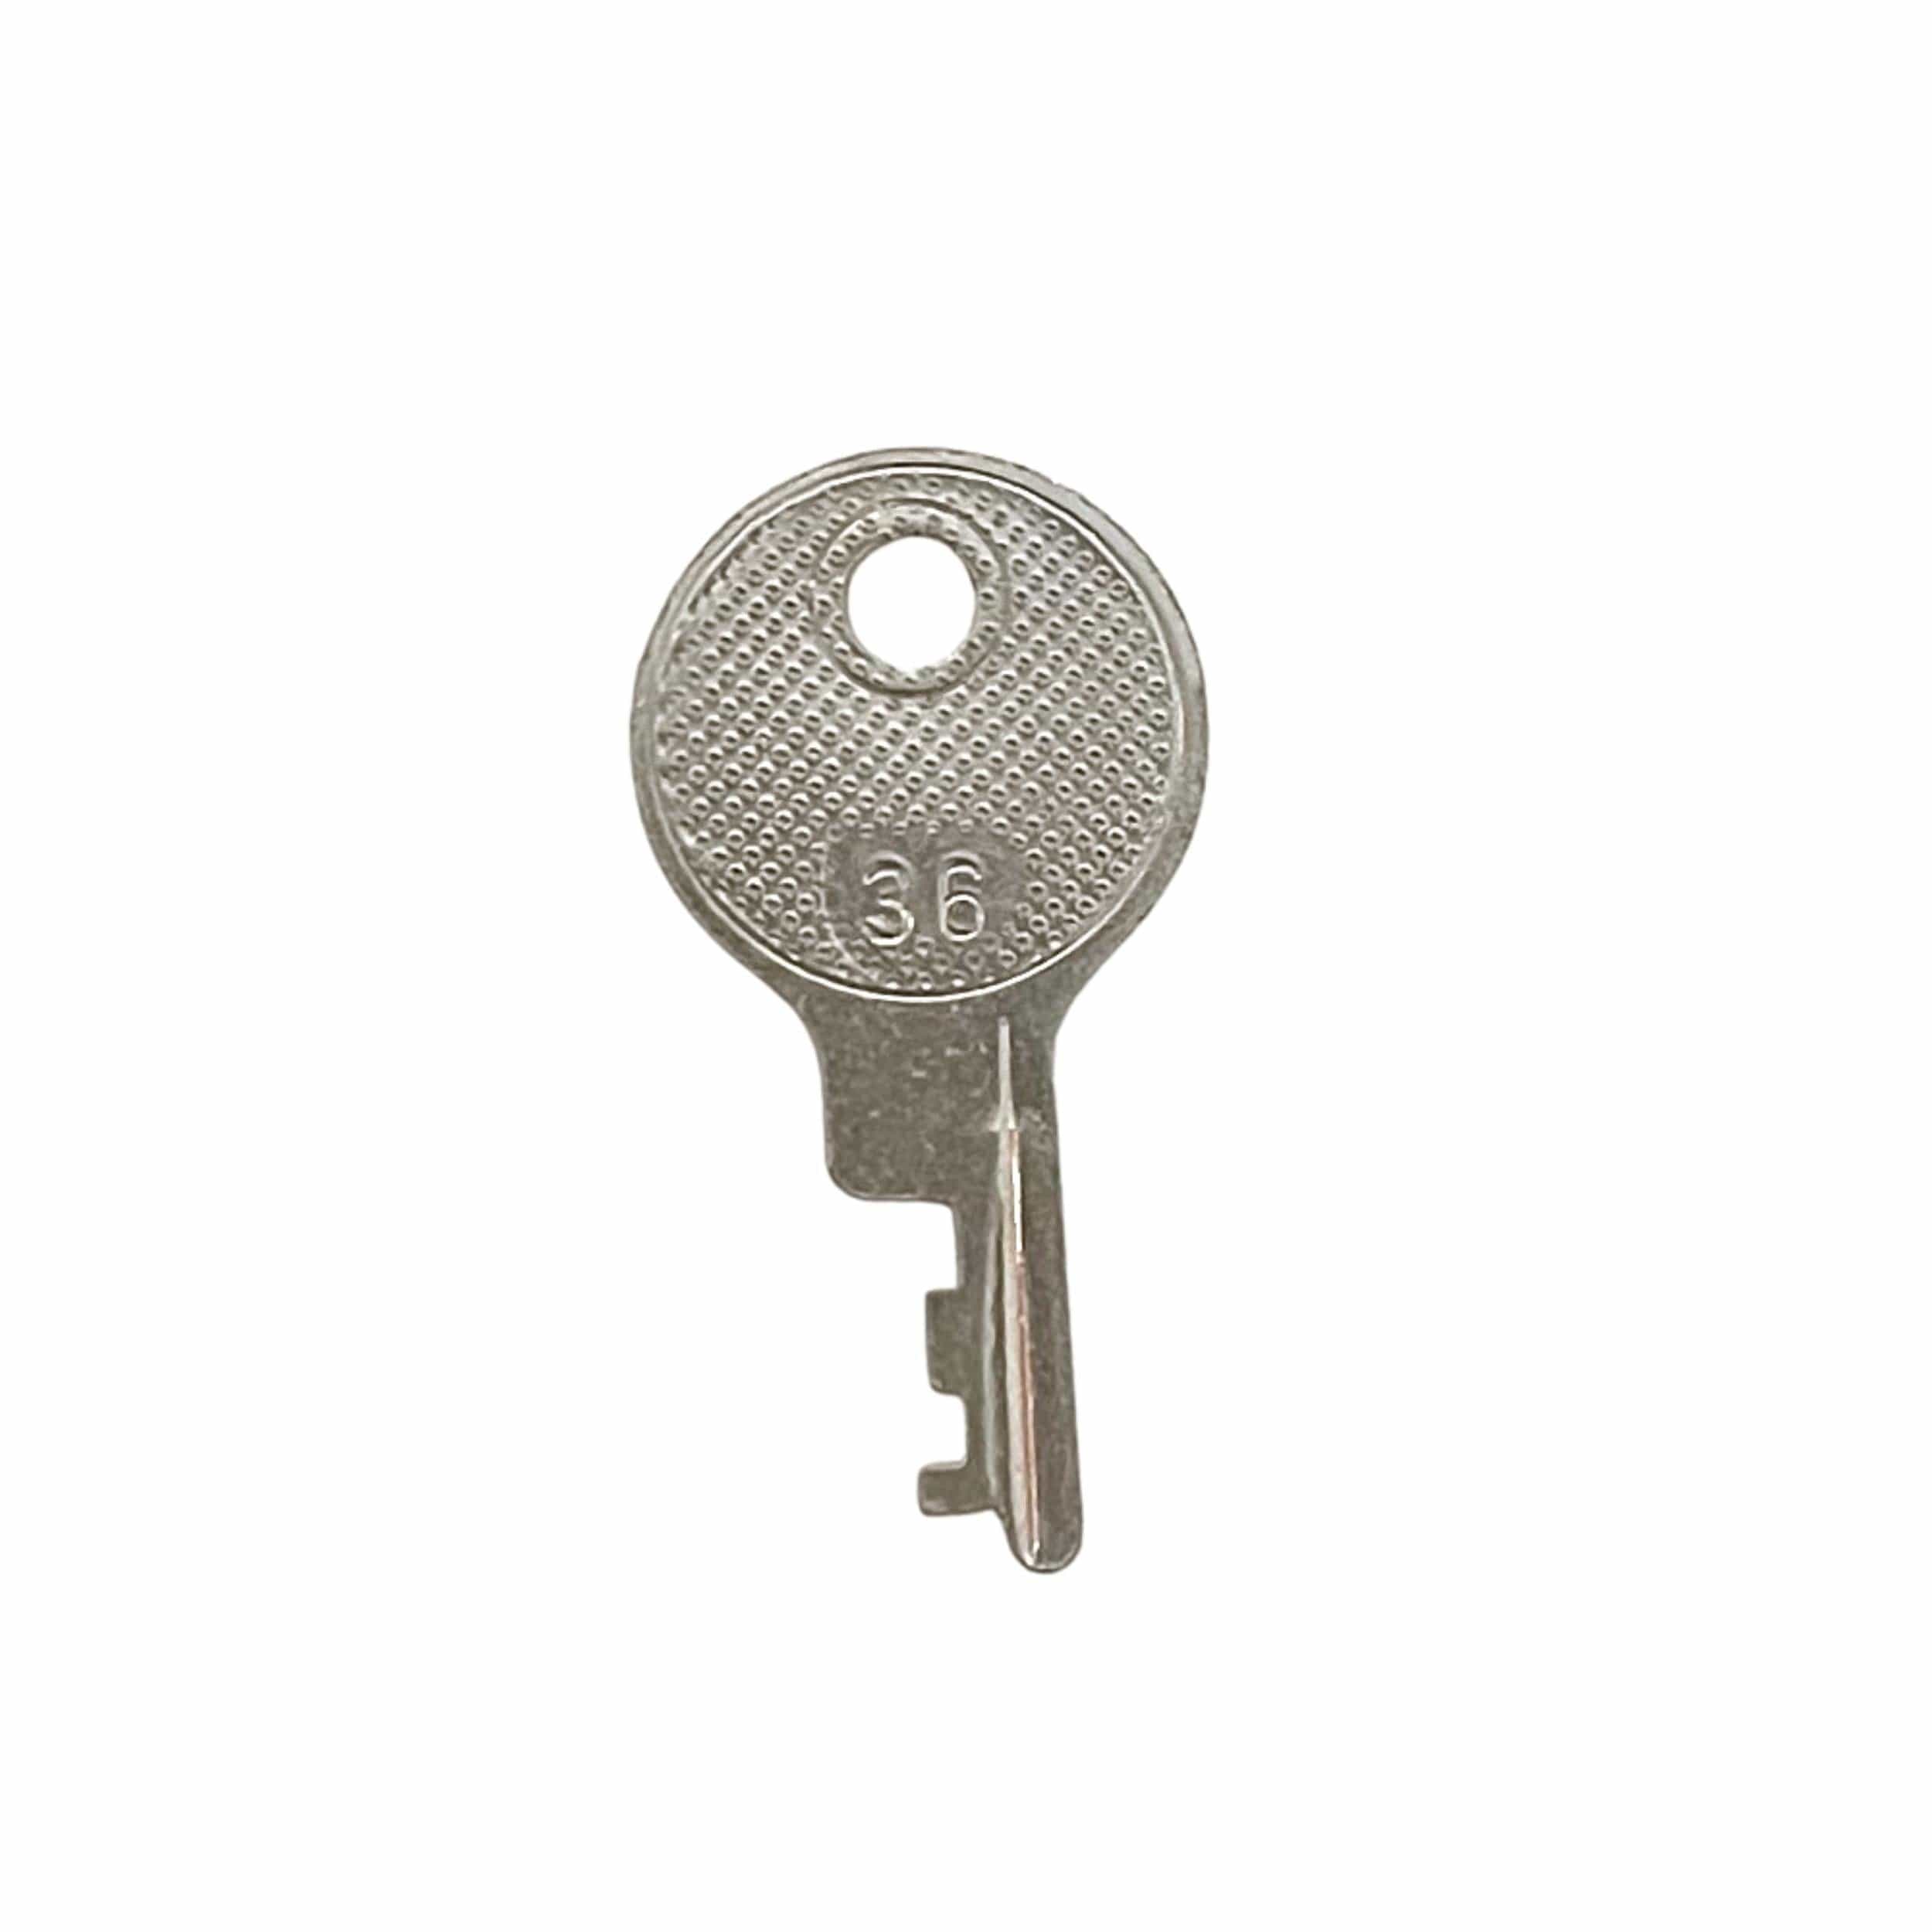 Ohio Travel Bag Locks & Closures Excelsior No. 36 Lock Replacement Key, 5PK, #EX-36K EX-36K